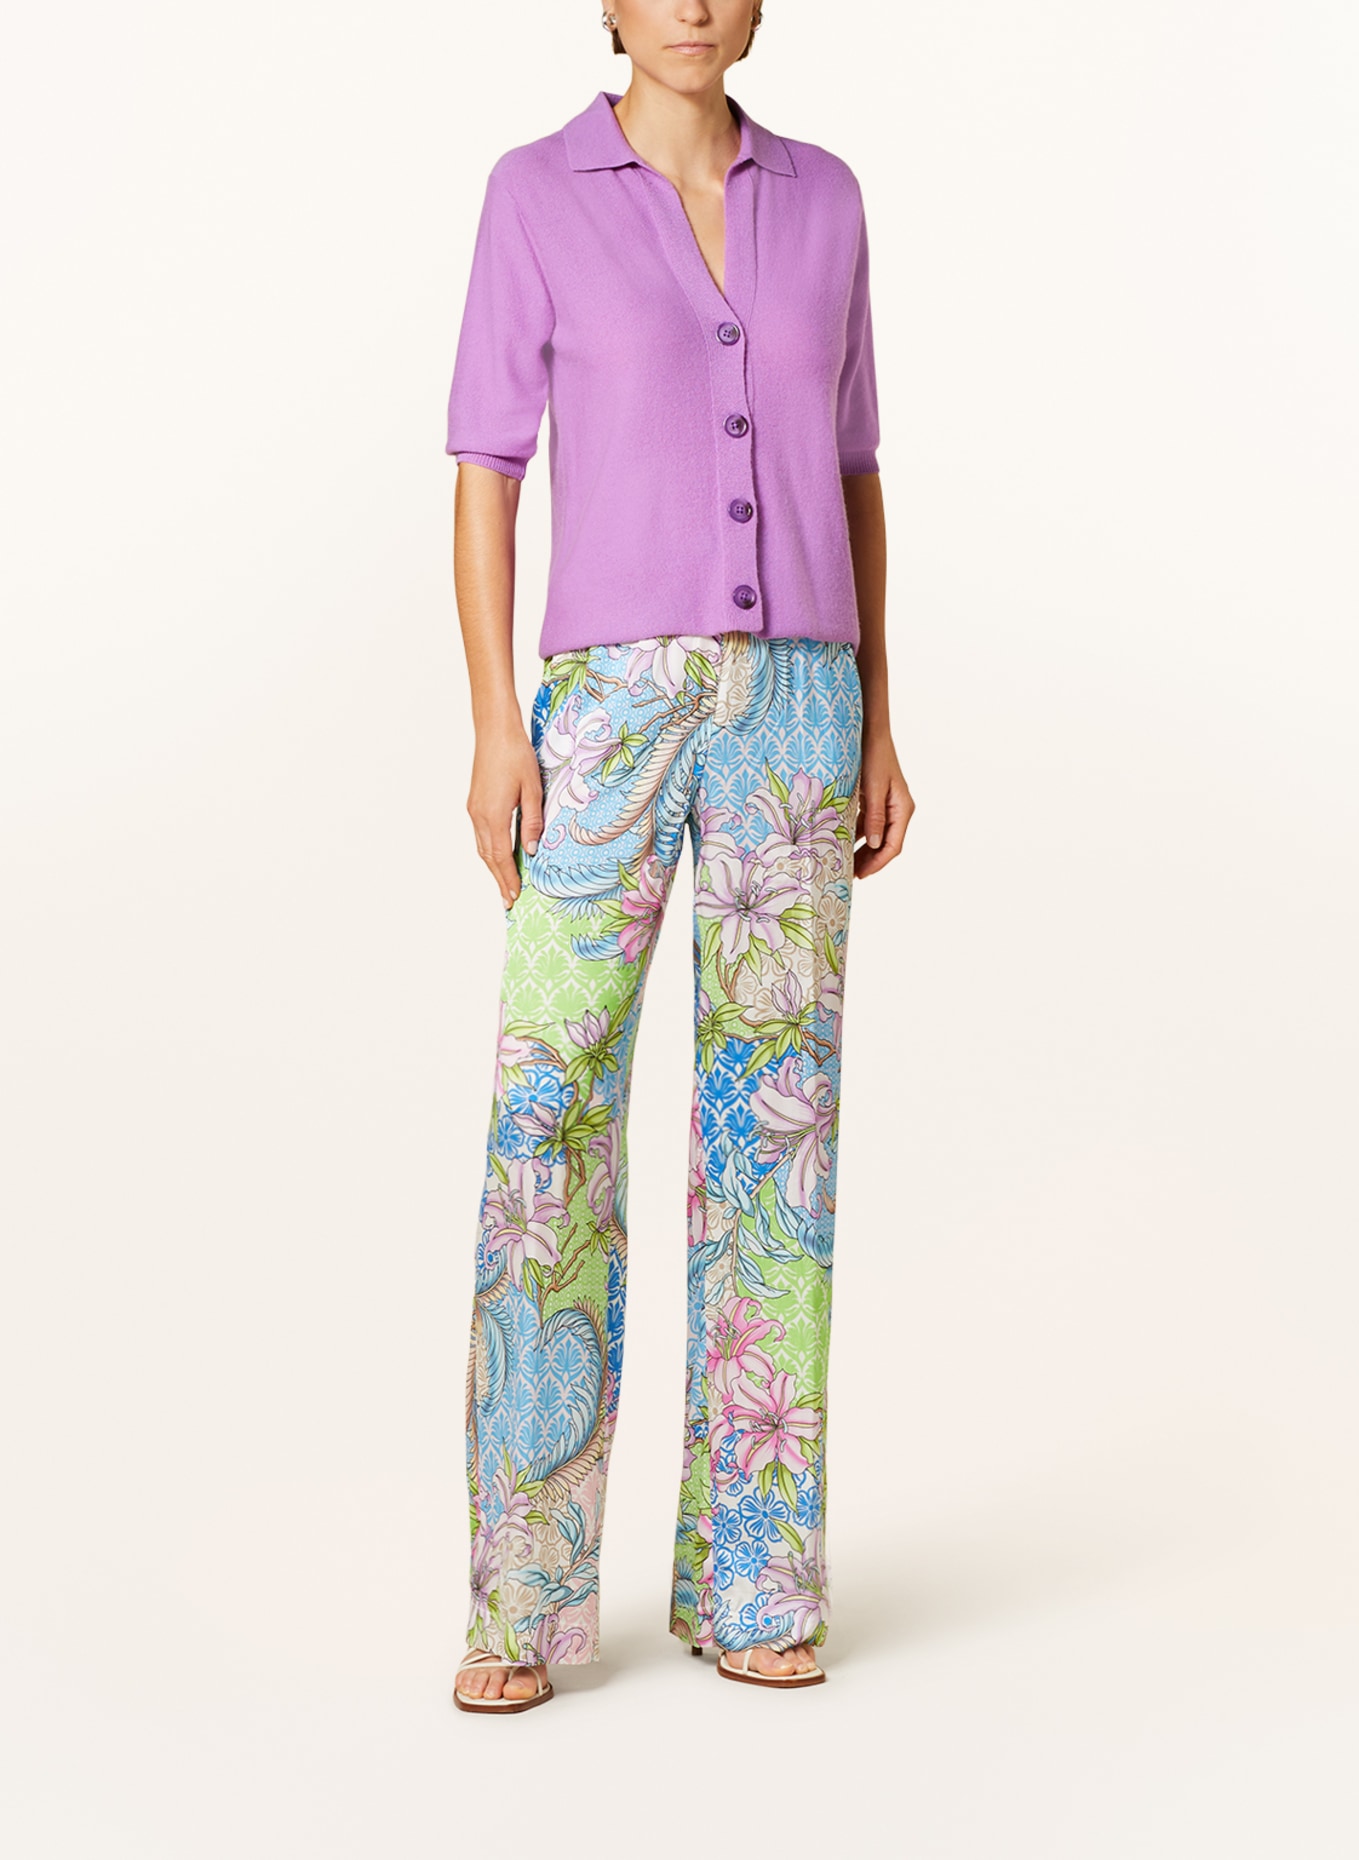 SEM PER LEI Cardigan with cashmere, Color: PURPLE (Image 2)